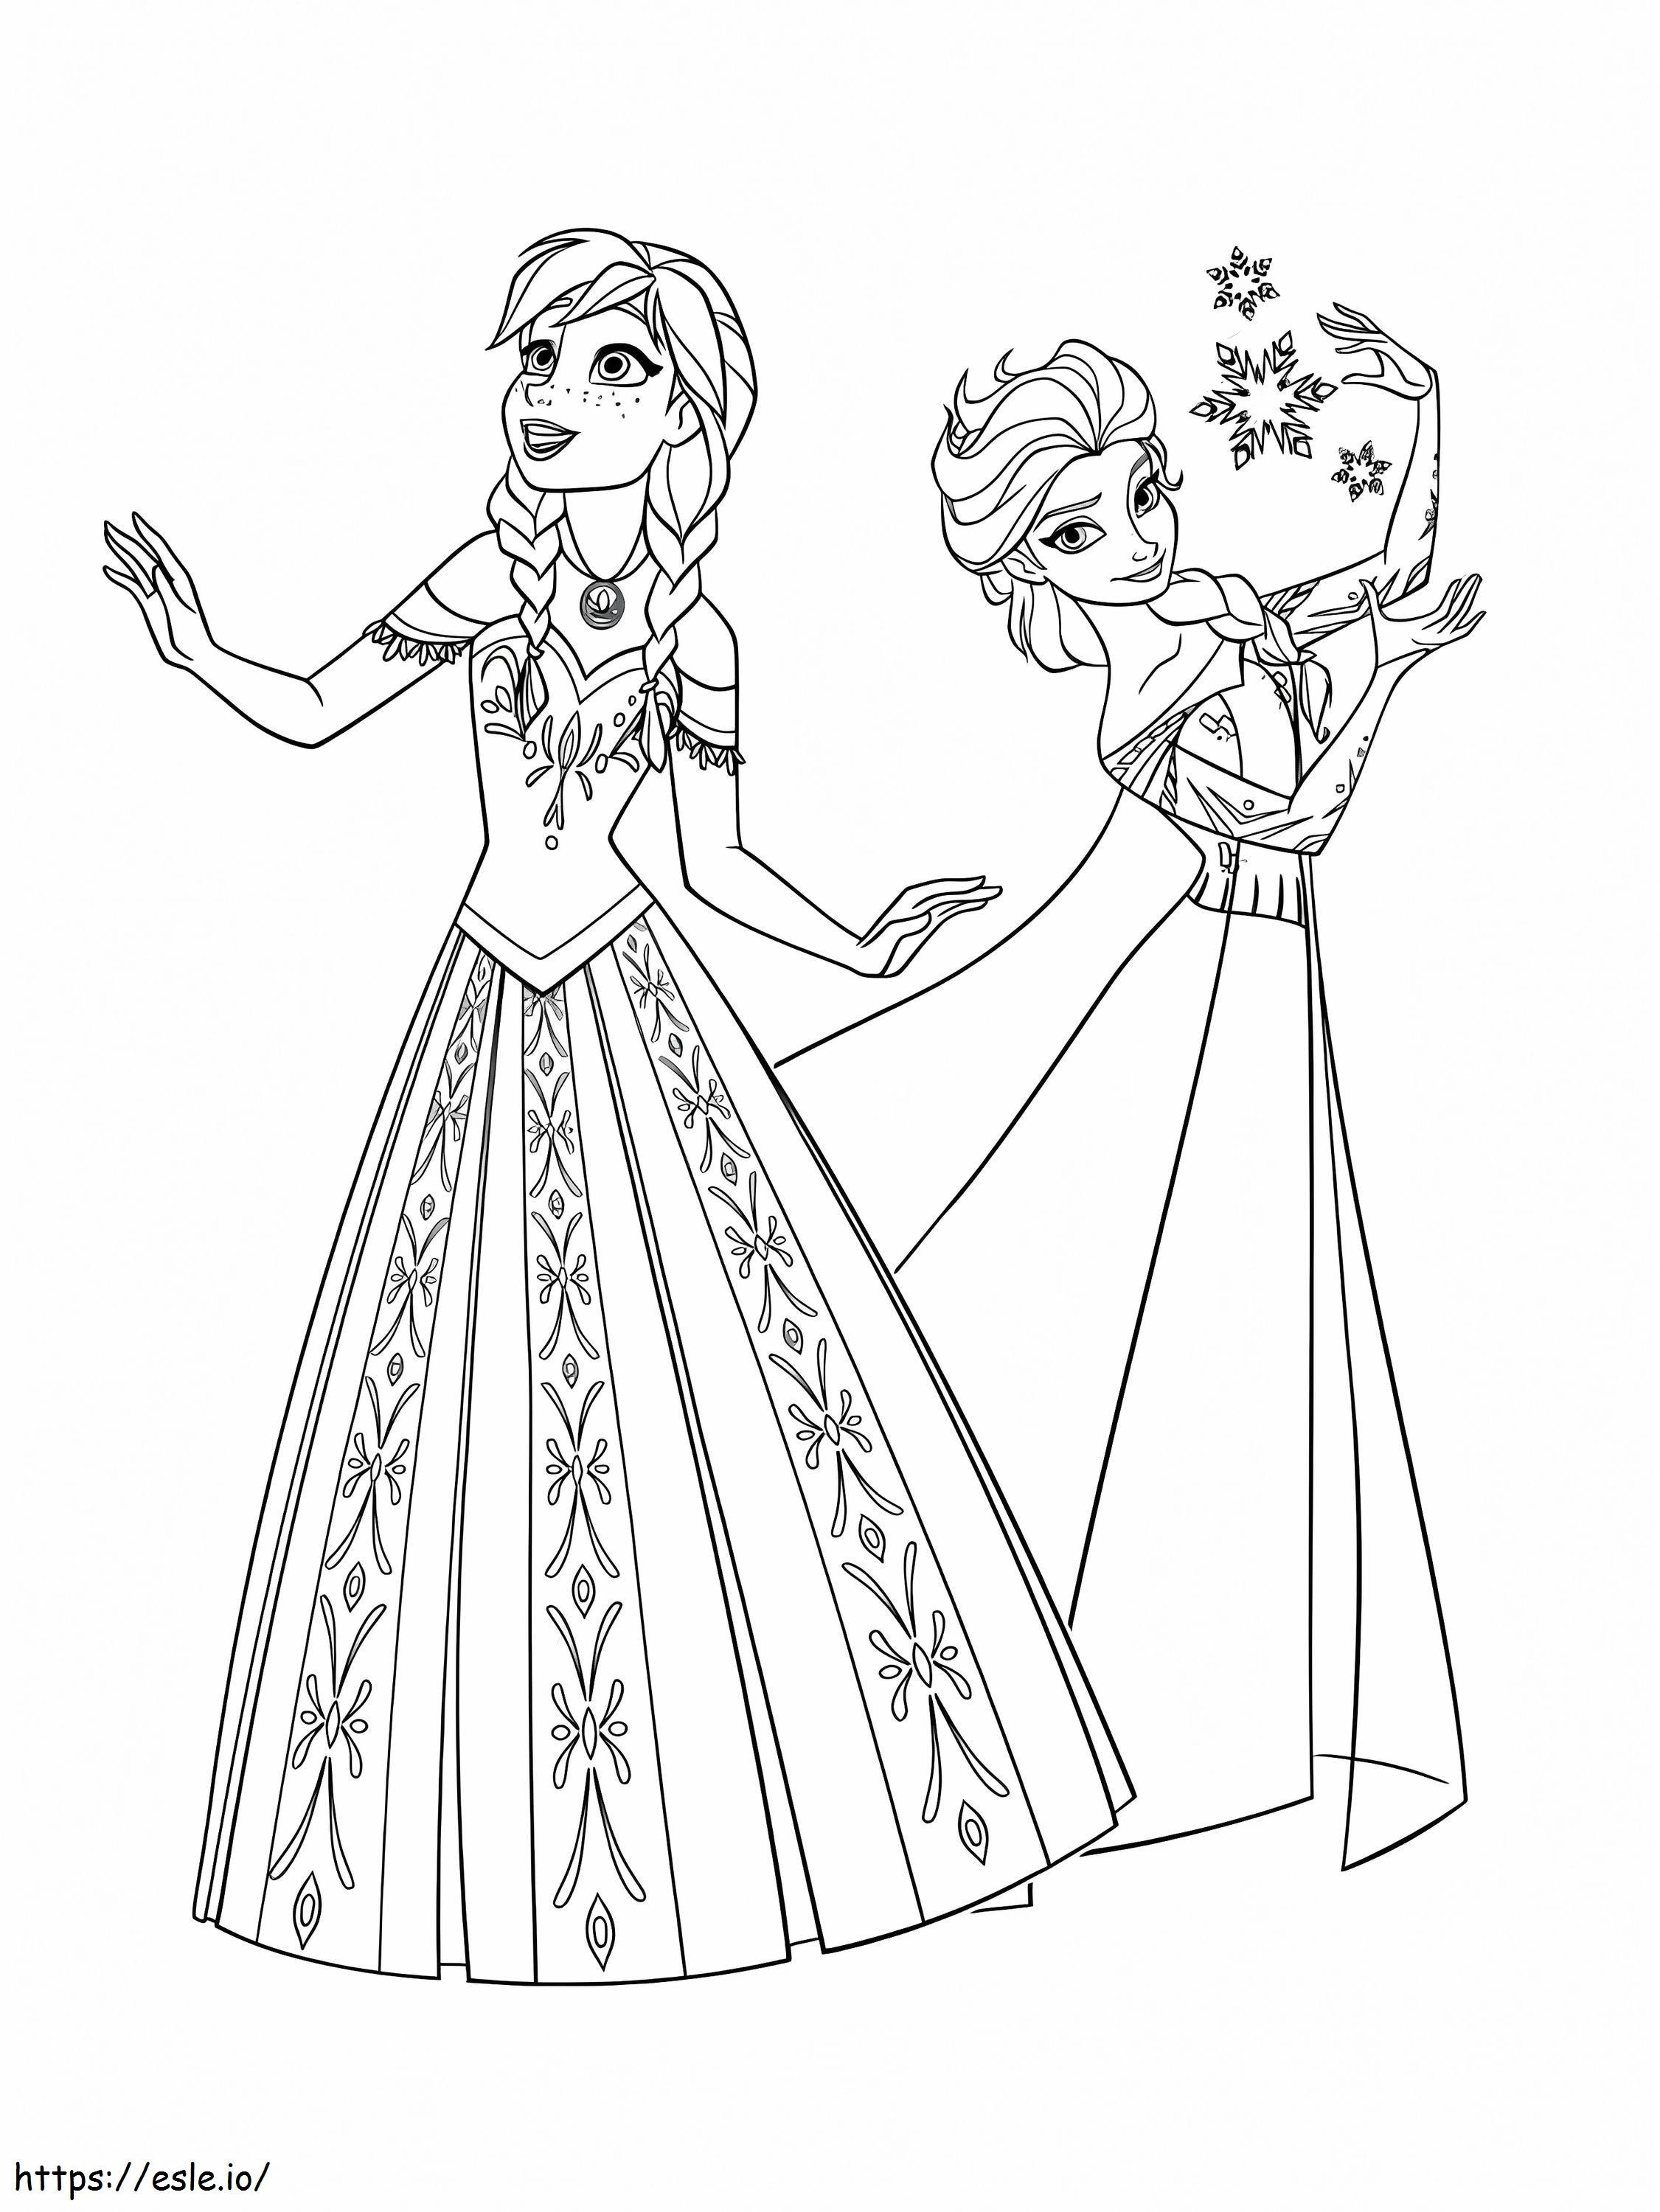 Bellissime Anna ed Elsa da colorare